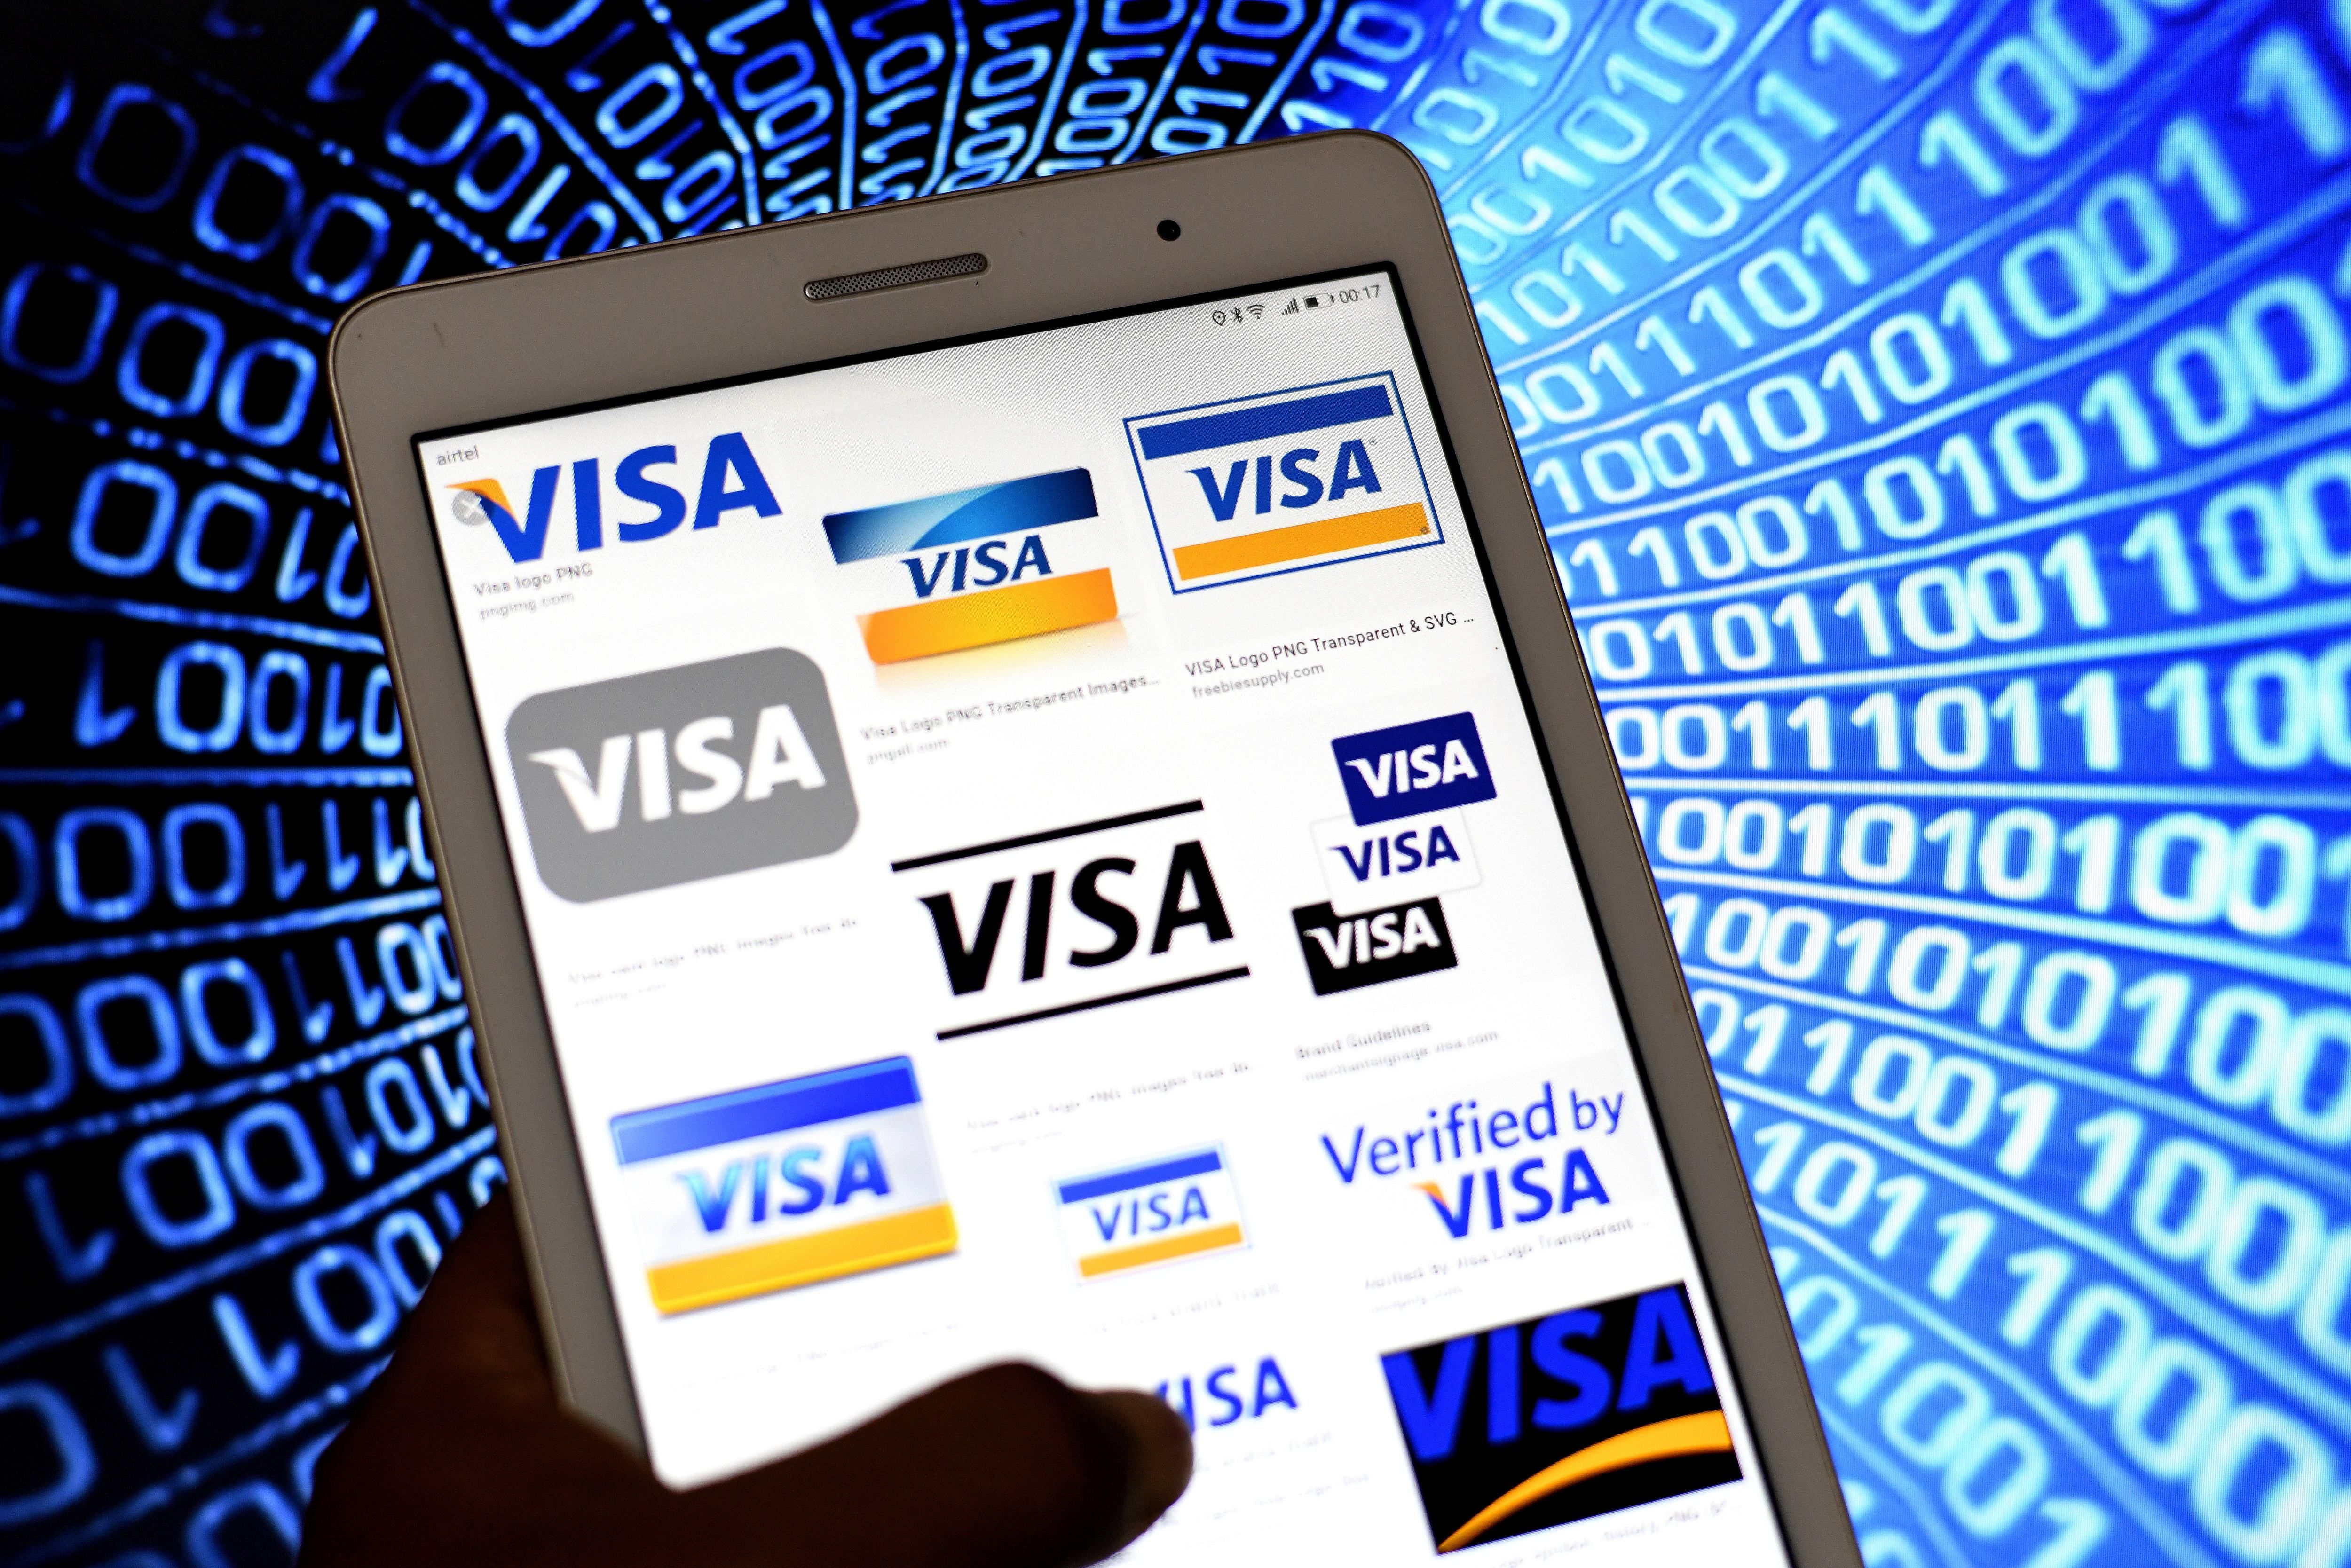 Visa приобрела NFT-икону для криптосообщества: какую цель преследует компания - новости биткоина - Финансы